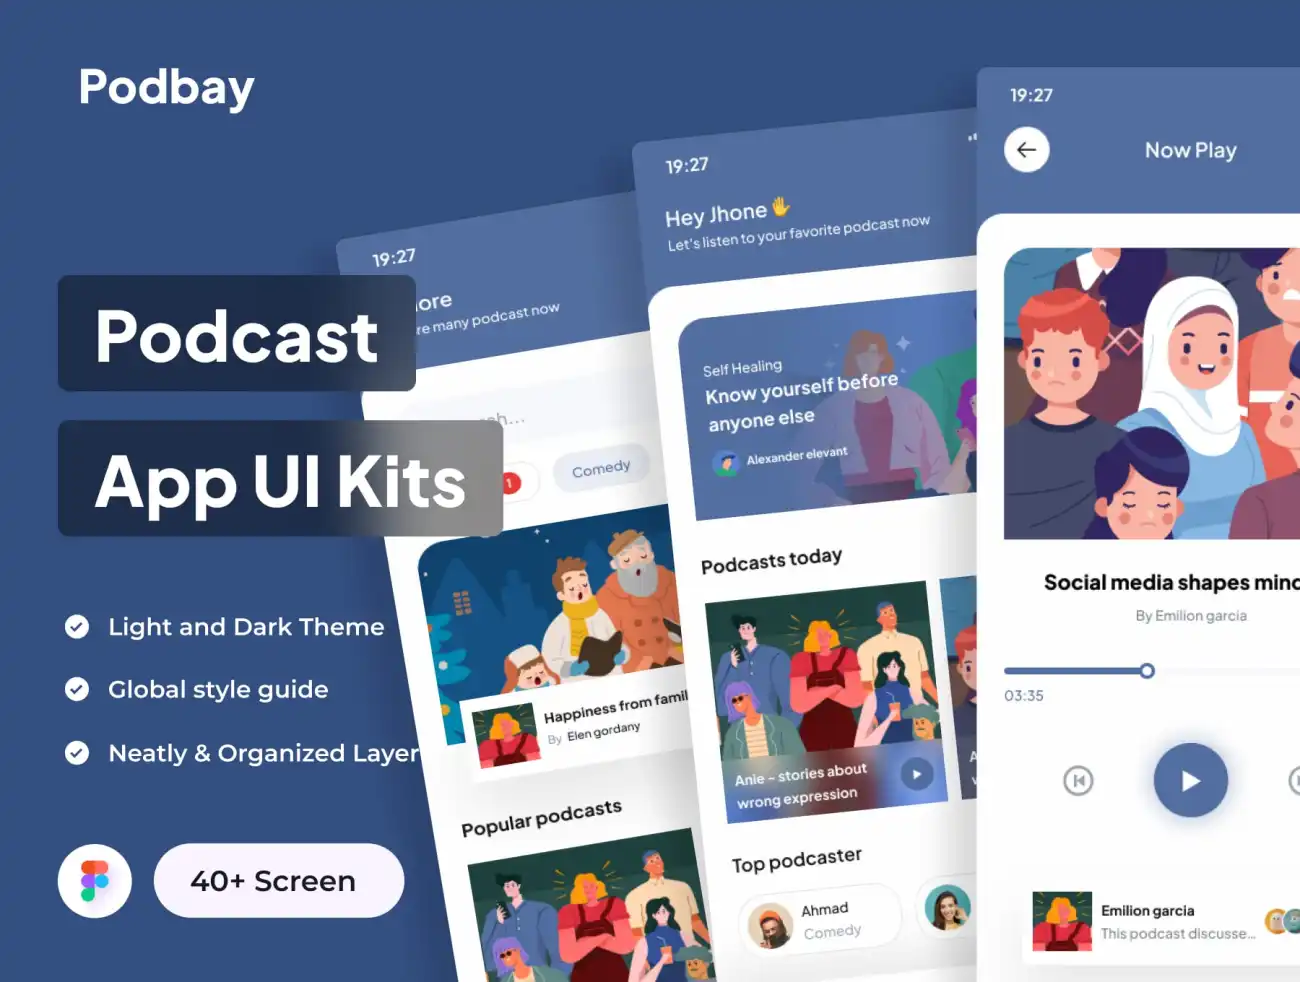 播客电台音乐播放器应用设计套件 Podbay - Podcast App UI Kits .figma-UI/UX、ui套件、主页、应用、播放器-到位啦UI